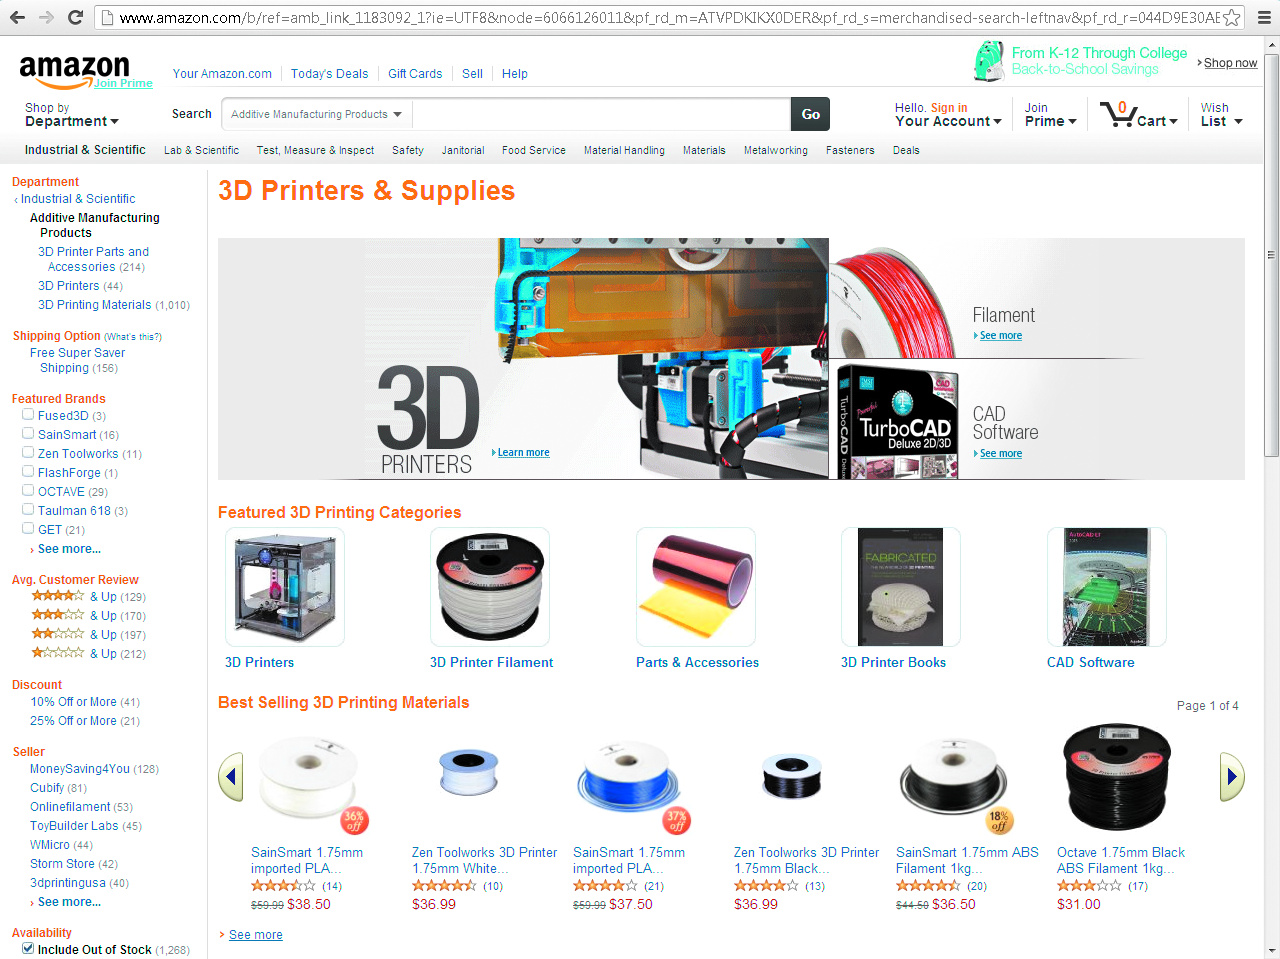 Maschinen, Angebote und Anwendungen für den 3D-Druck | c't Magazin